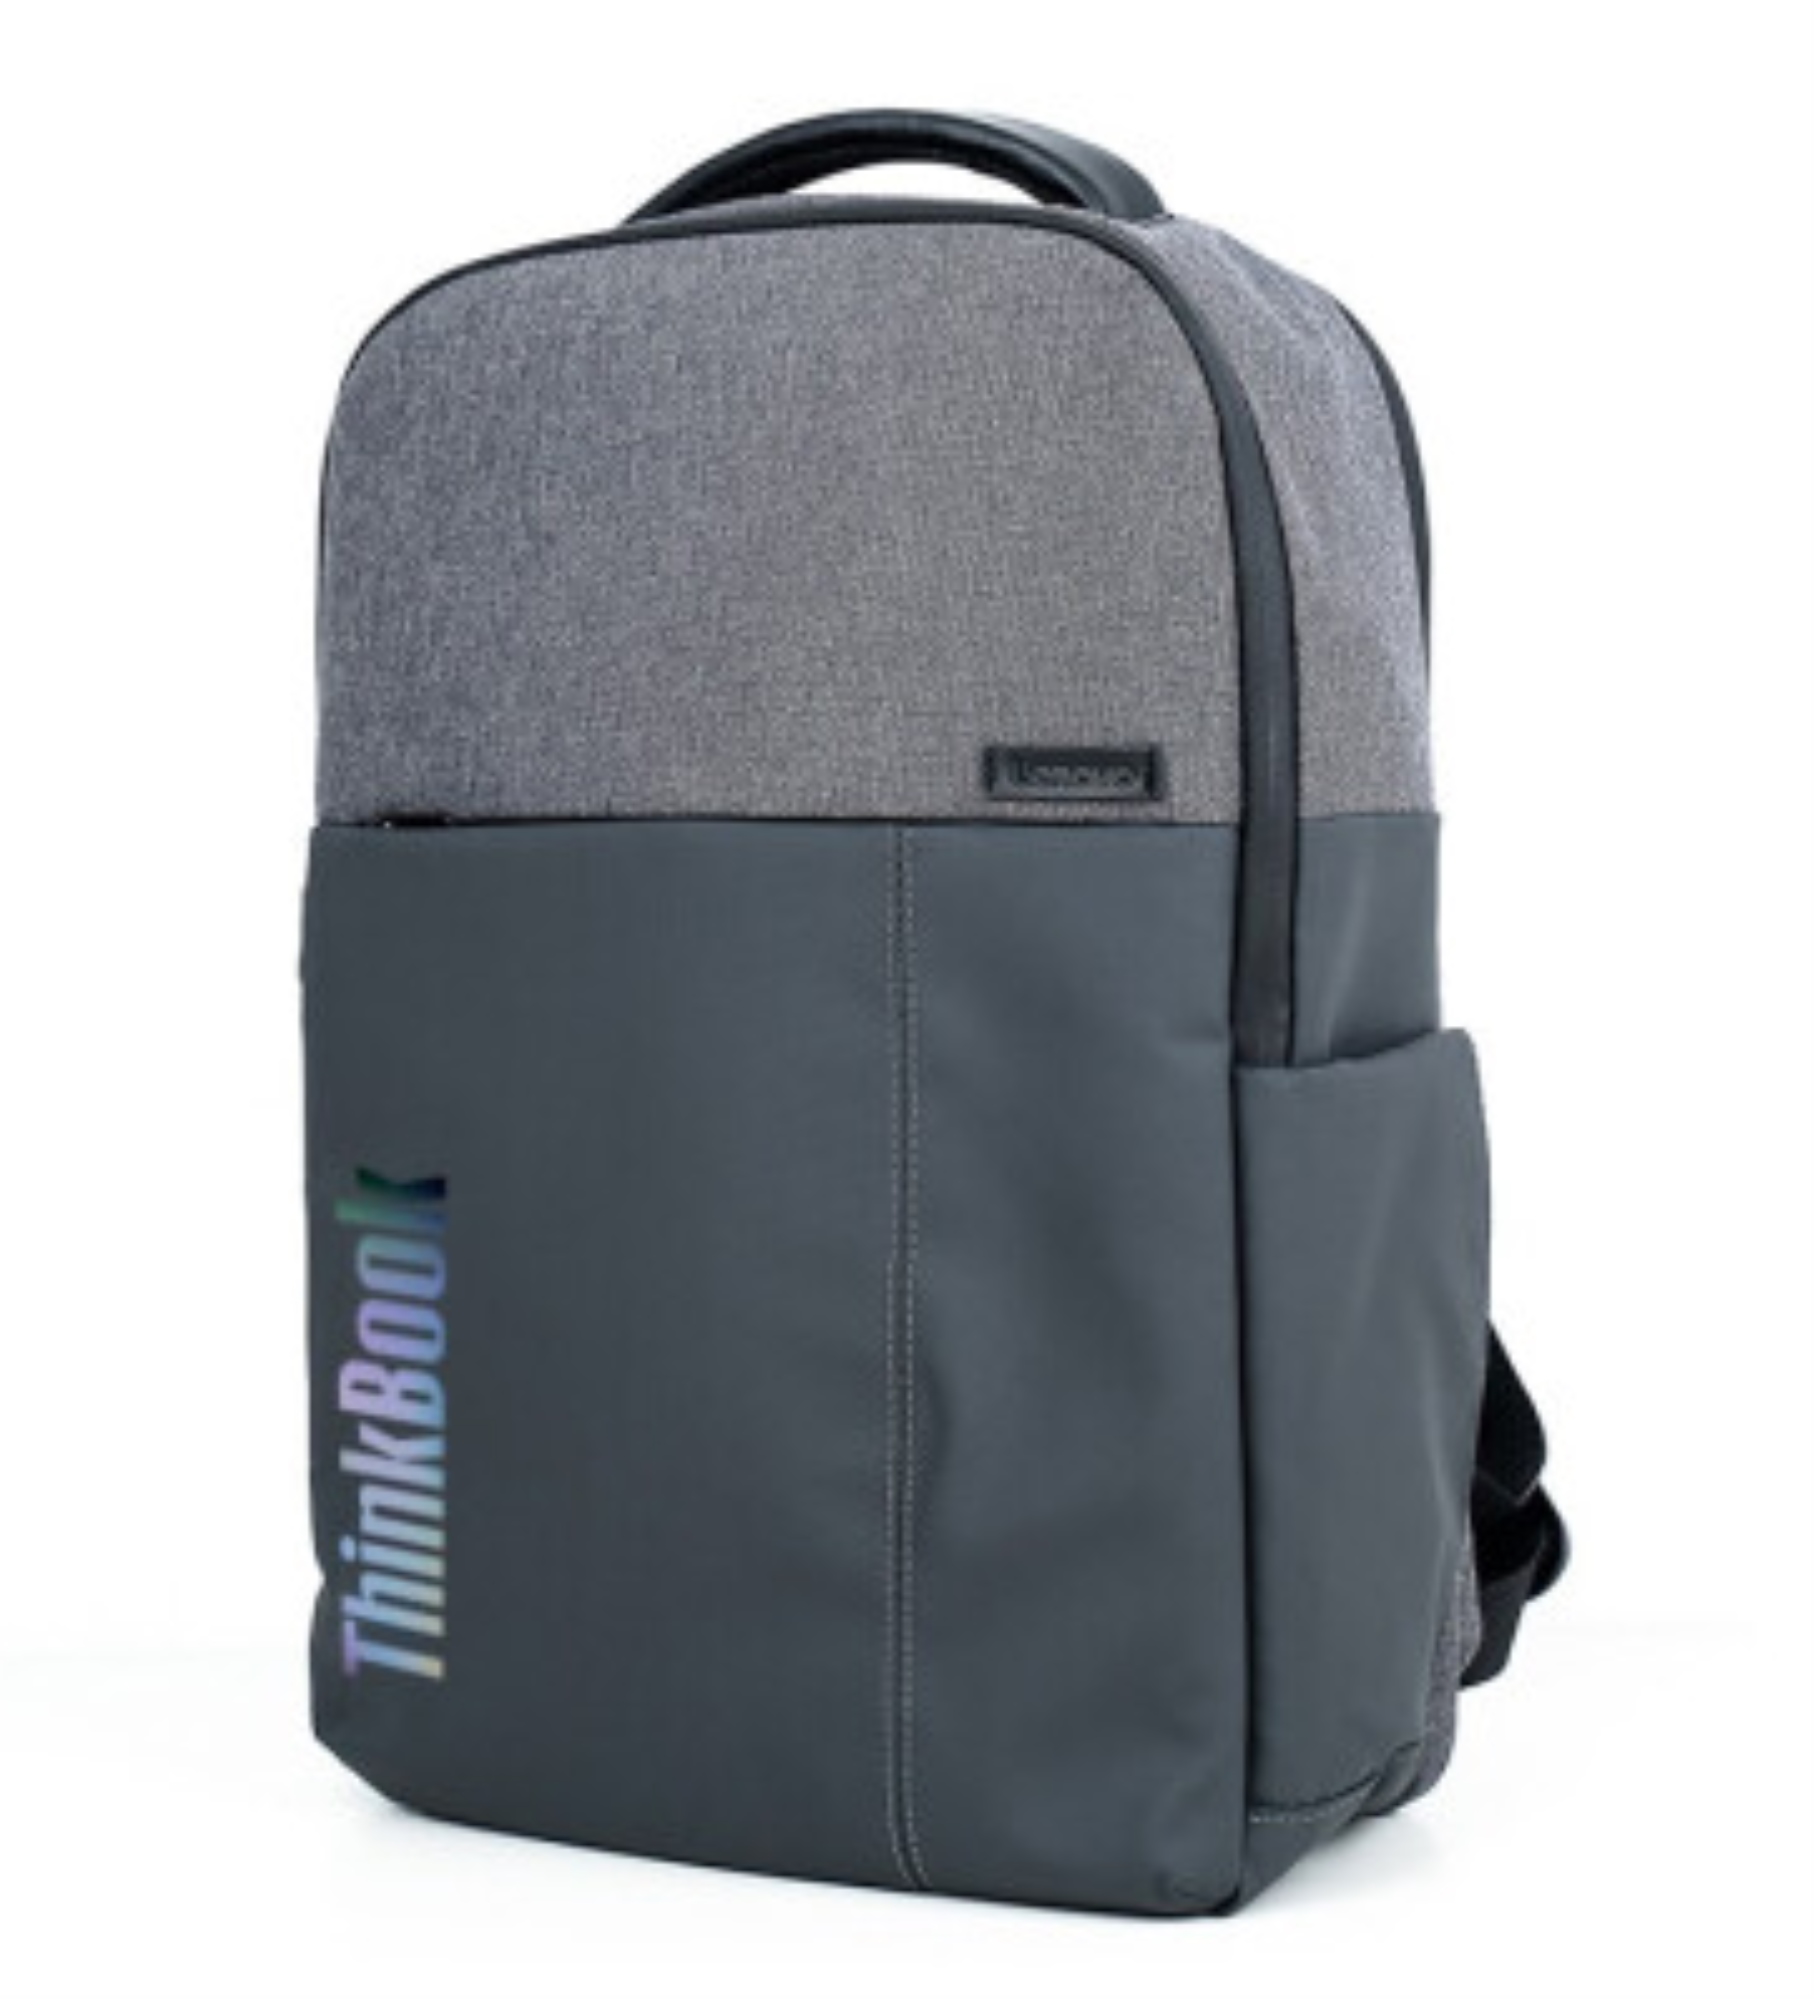 Original Lenovo Thinkpad laptop bag 14 inch 15.6 inch shoulder bag